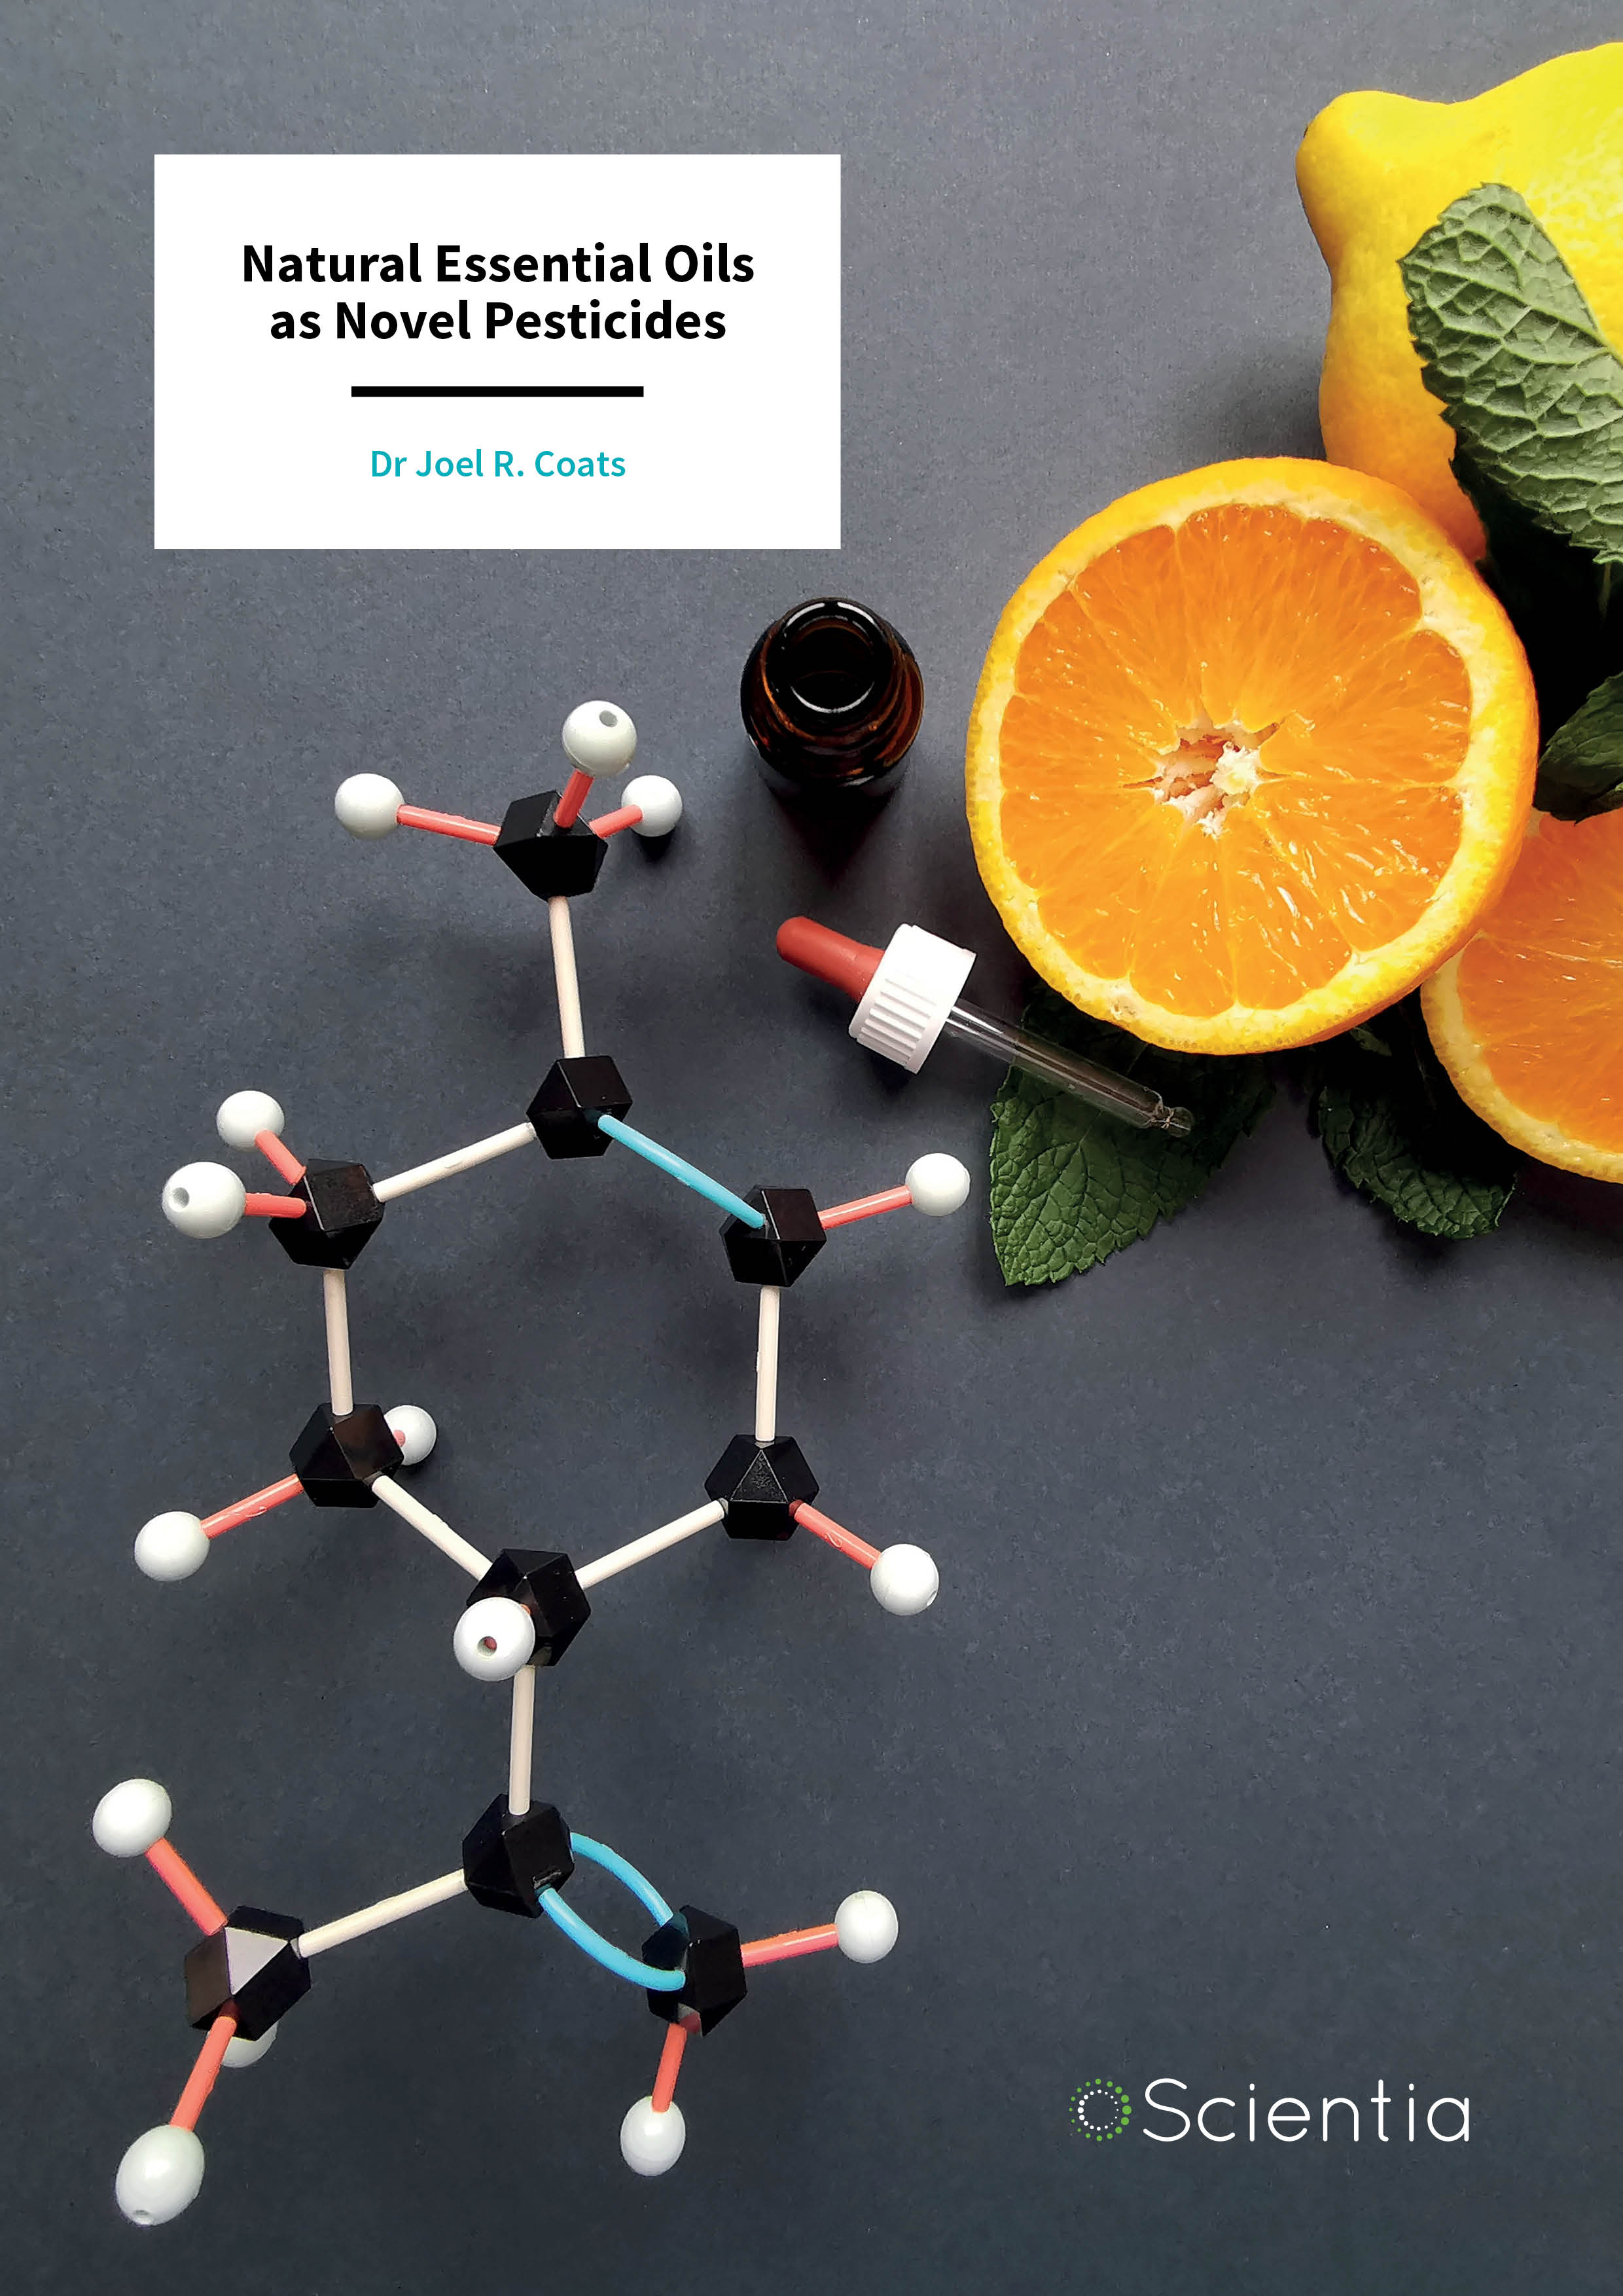 Dr Joel R. Coats – Natural Essential Oils as Novel Pesticides